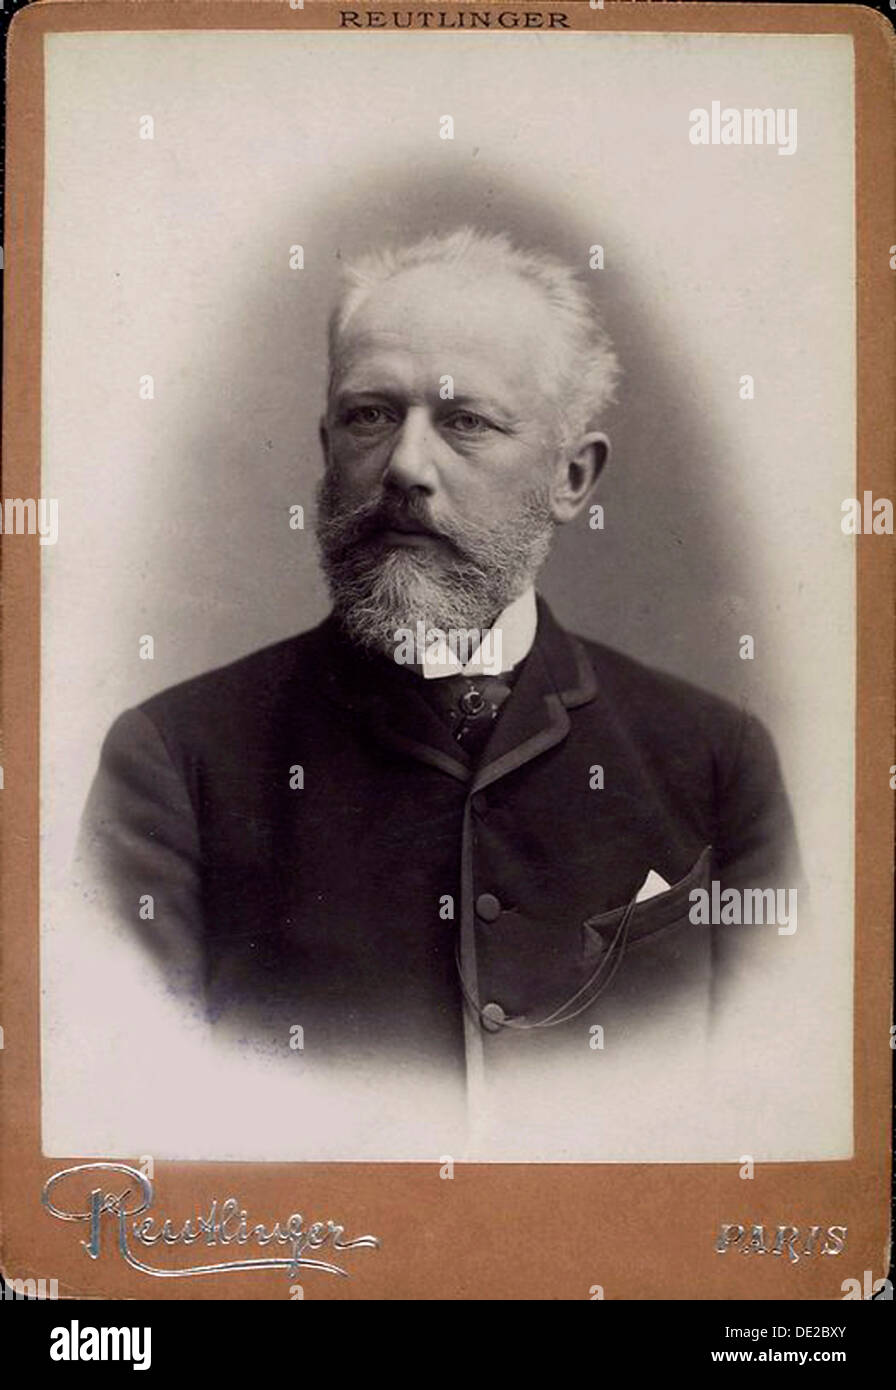 Peter Ilich Tchaikovsky, compositeur russe, fin du xixe siècle. Artiste : Charles Reutlinger Banque D'Images